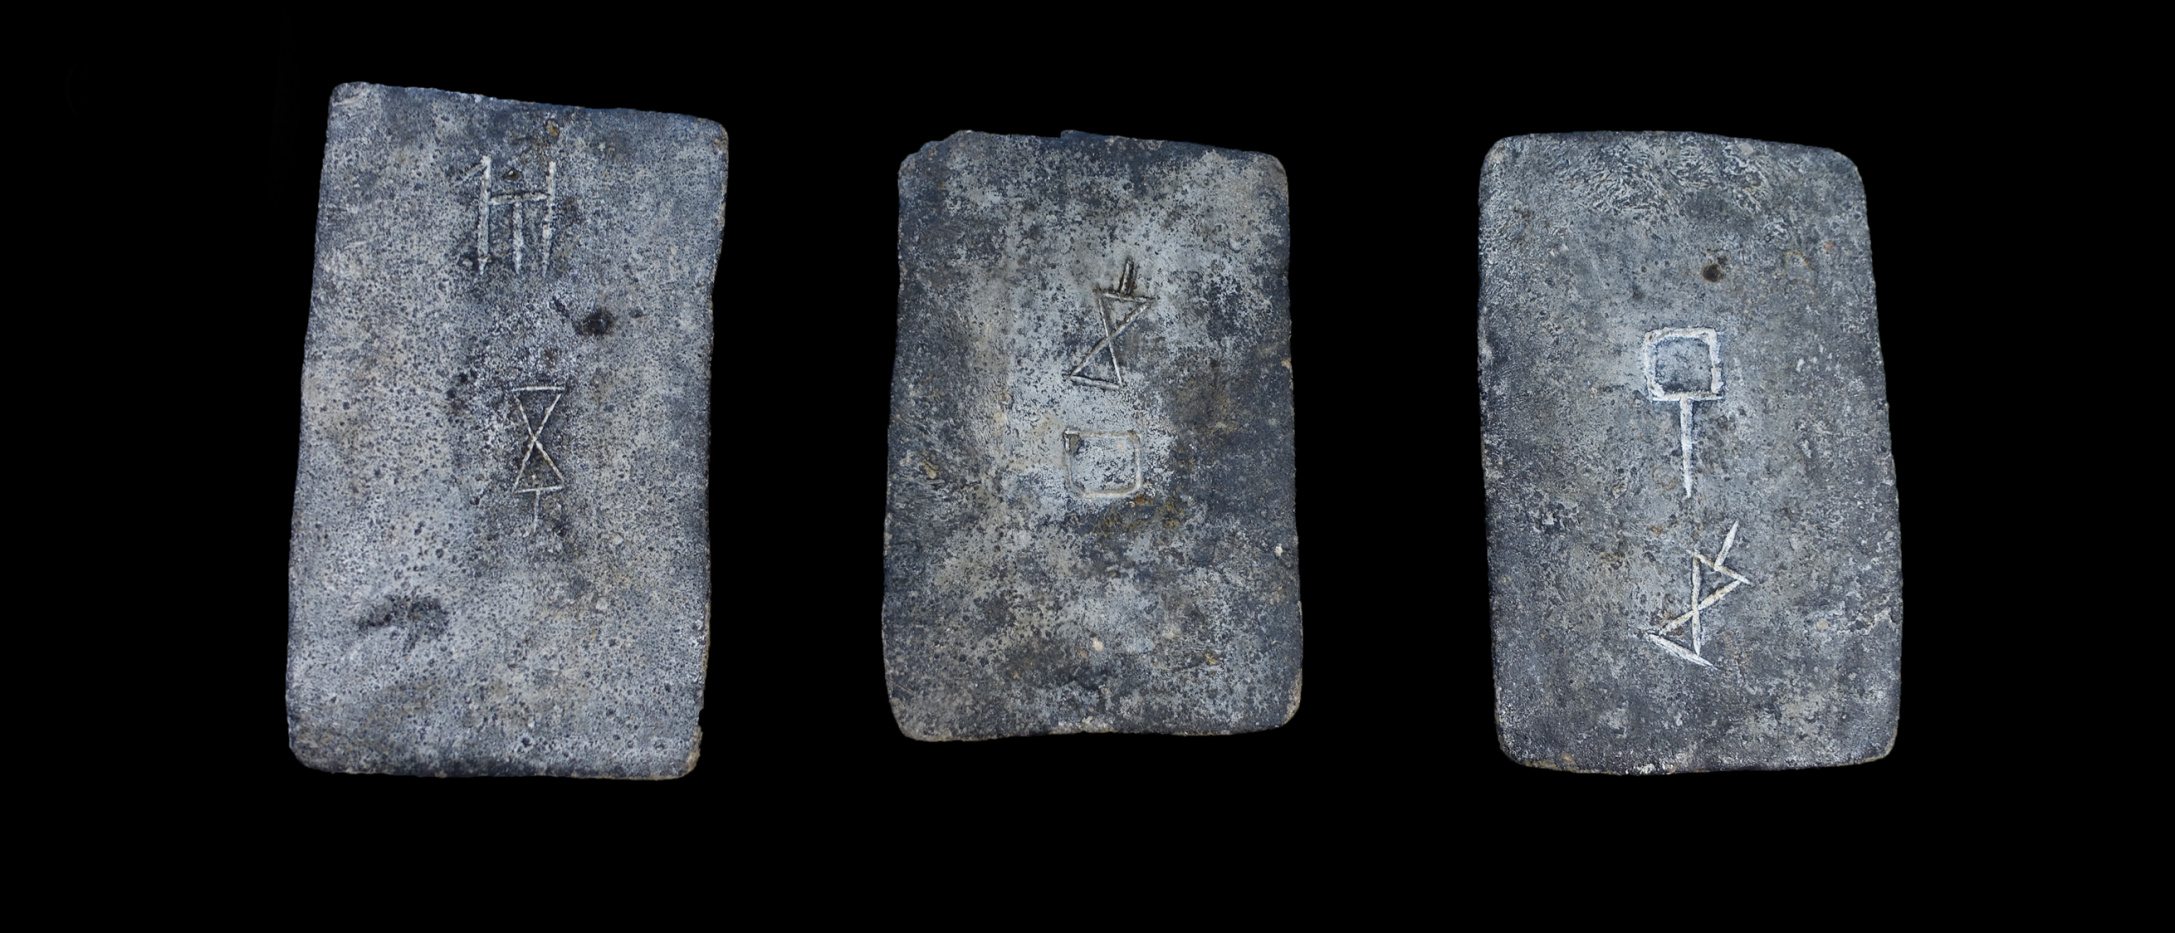 ಇಸ್ರೇಲ್ ಕರಾವಳಿಯ ಸಮುದ್ರದಿಂದ ಅಧ್ಯಯನ ಮಾಡಿದ ಕೆಲವು ತವರ ಗಟ್ಟಿಗಳು (ಸುಮಾರು 1300-1200 BCE).